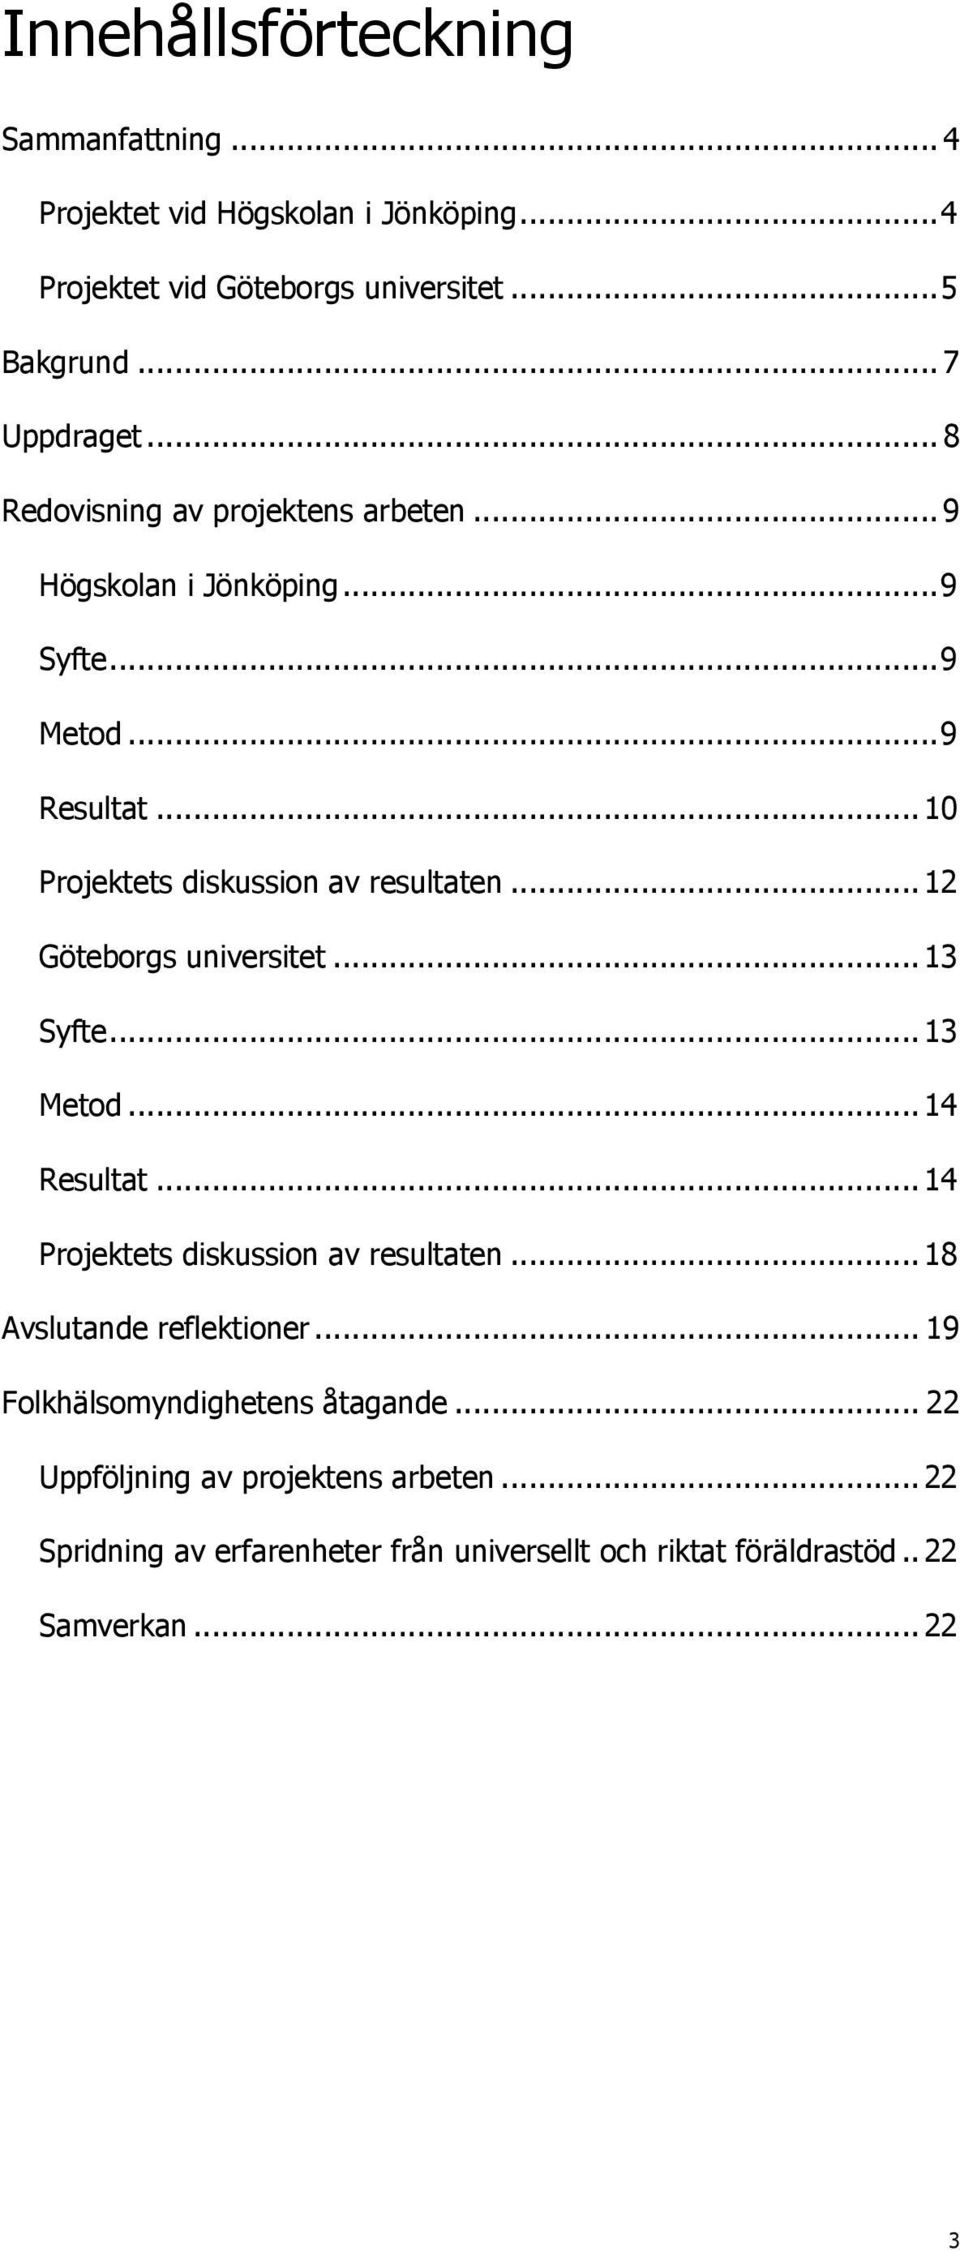 .. 12 Göteborgs universitet... 13 Syfte... 13 Metod... 14 Resultat... 14 Projektets diskussion av resultaten... 18 Avslutande reflektioner.